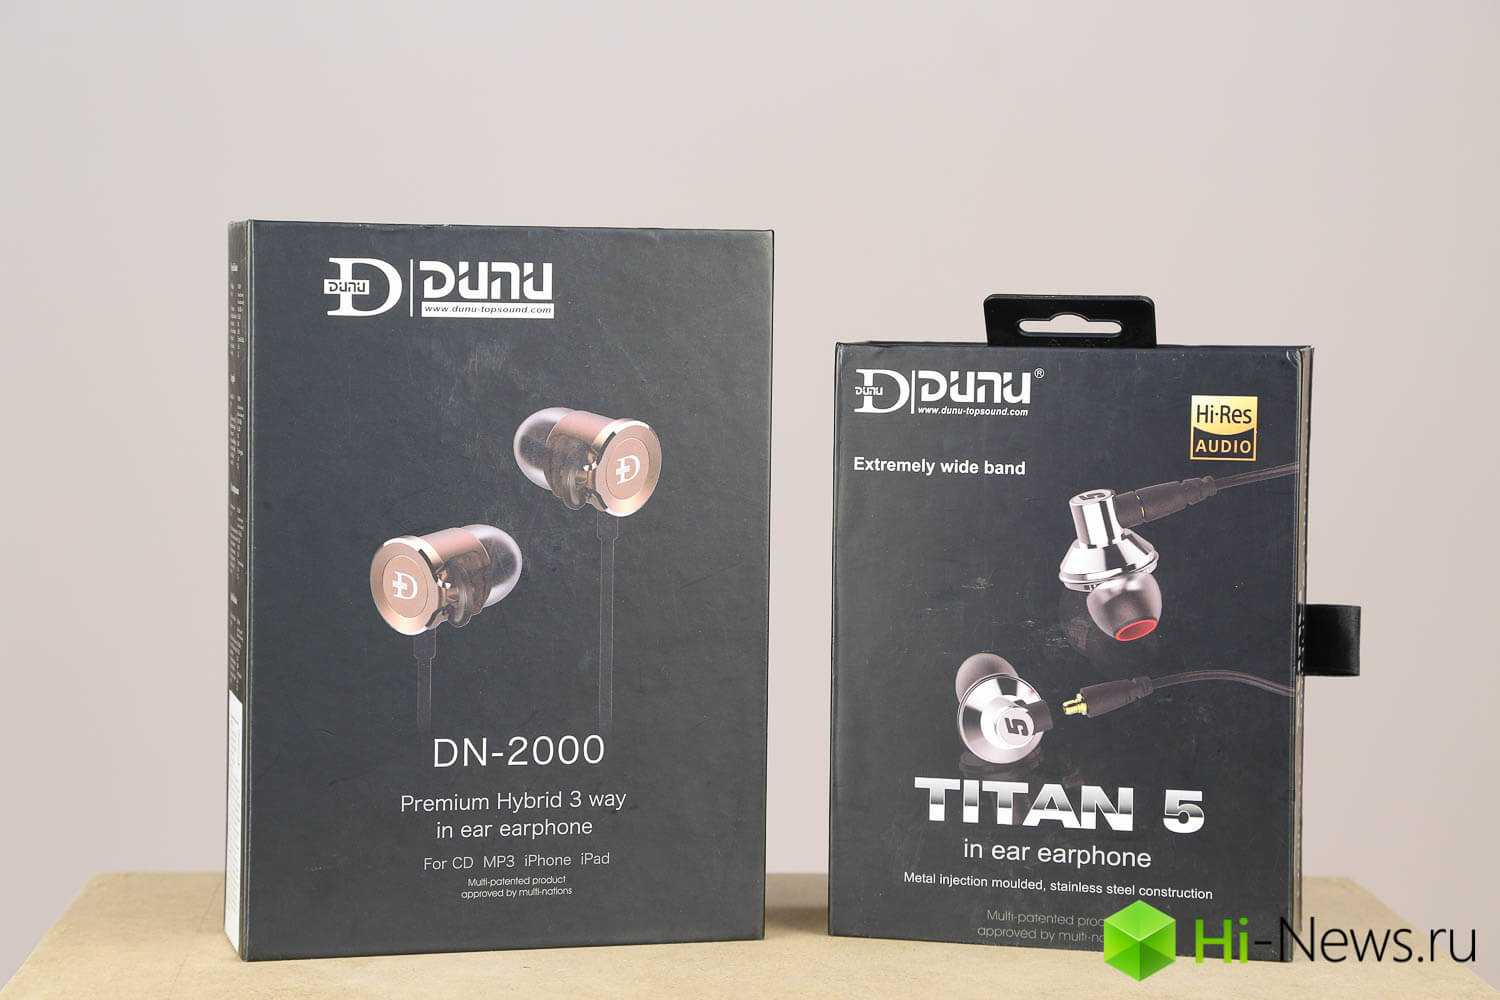 Обзор dunu titan 6: наушники и для плеера, и для смартфона | smart новости высоких технологий